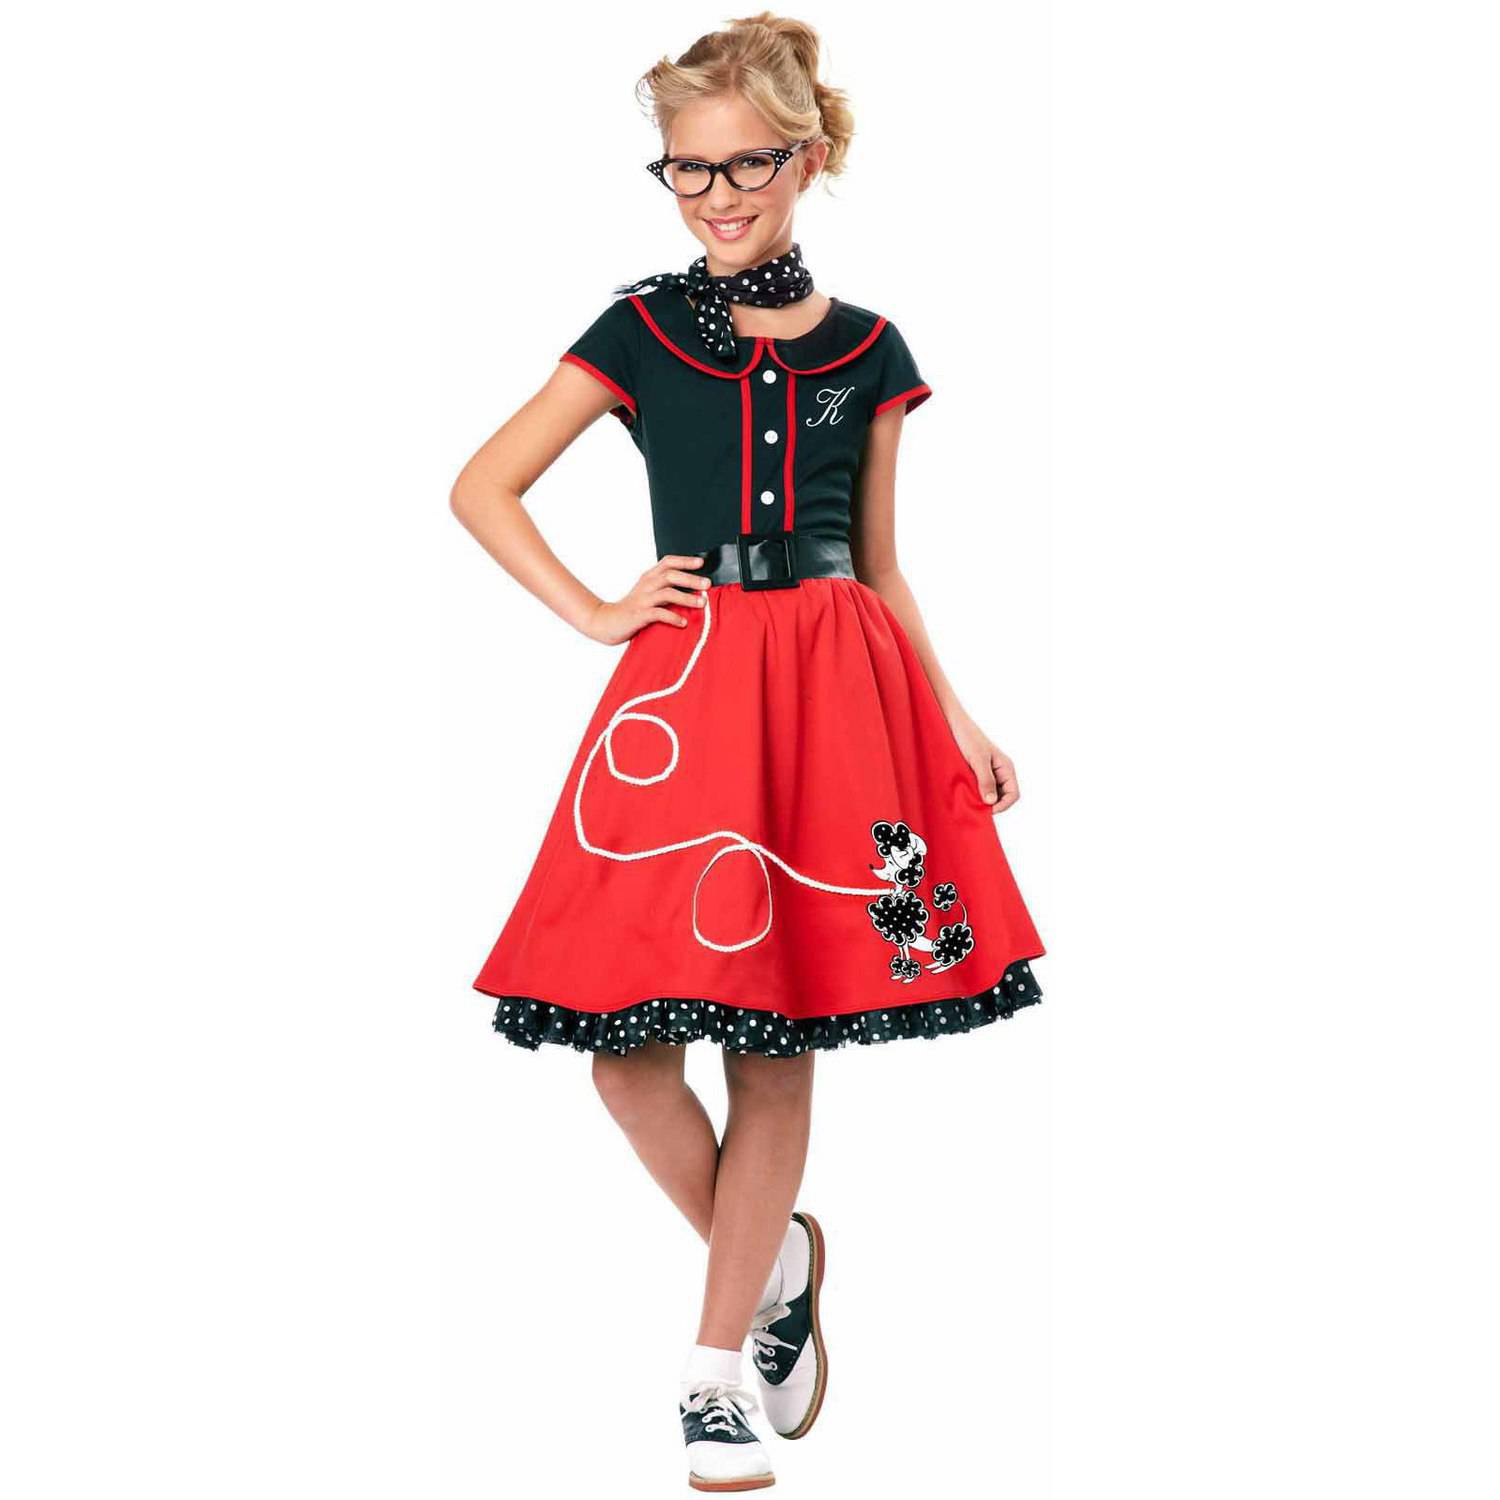 50's Sweetheart Girl's Halloween Fancy Dress Costume For Child, S